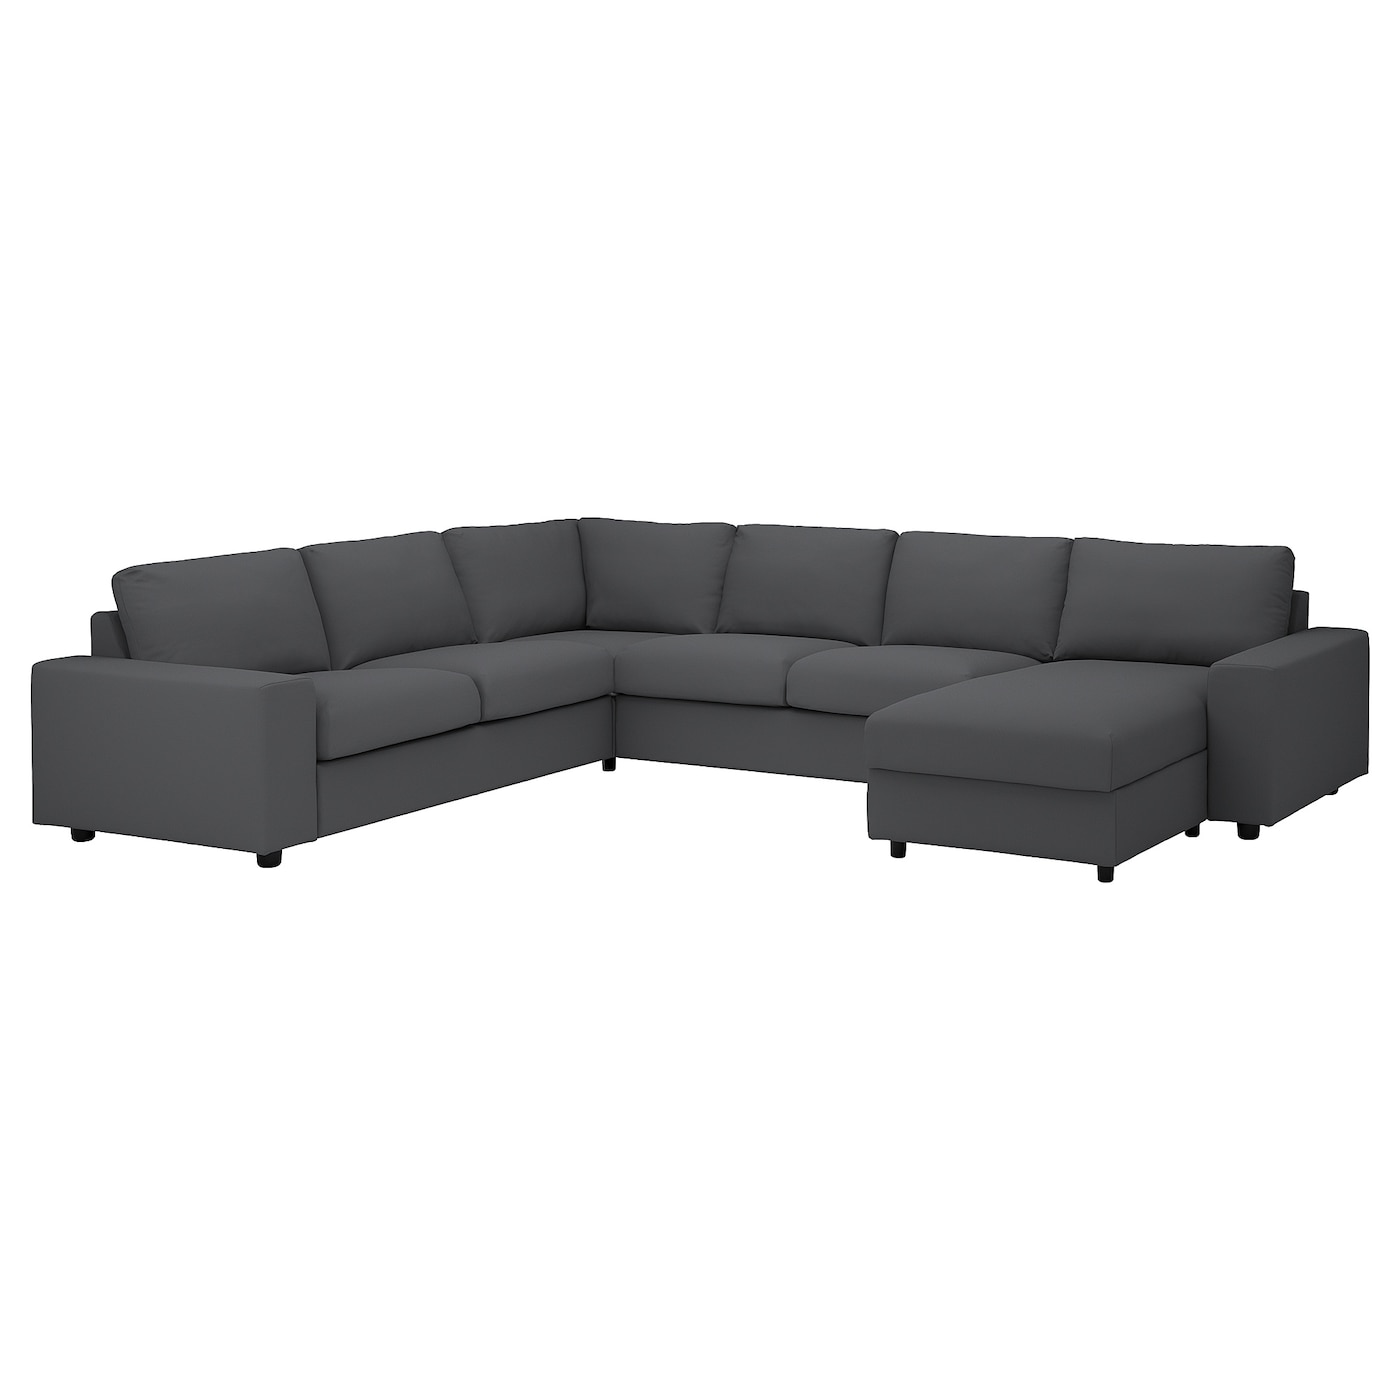 угловой диван флит ВИМЛЕ Диван угловой, 5-местный. диван+диван, с широкими подлокотниками/Халларп серый VIMLE IKEA